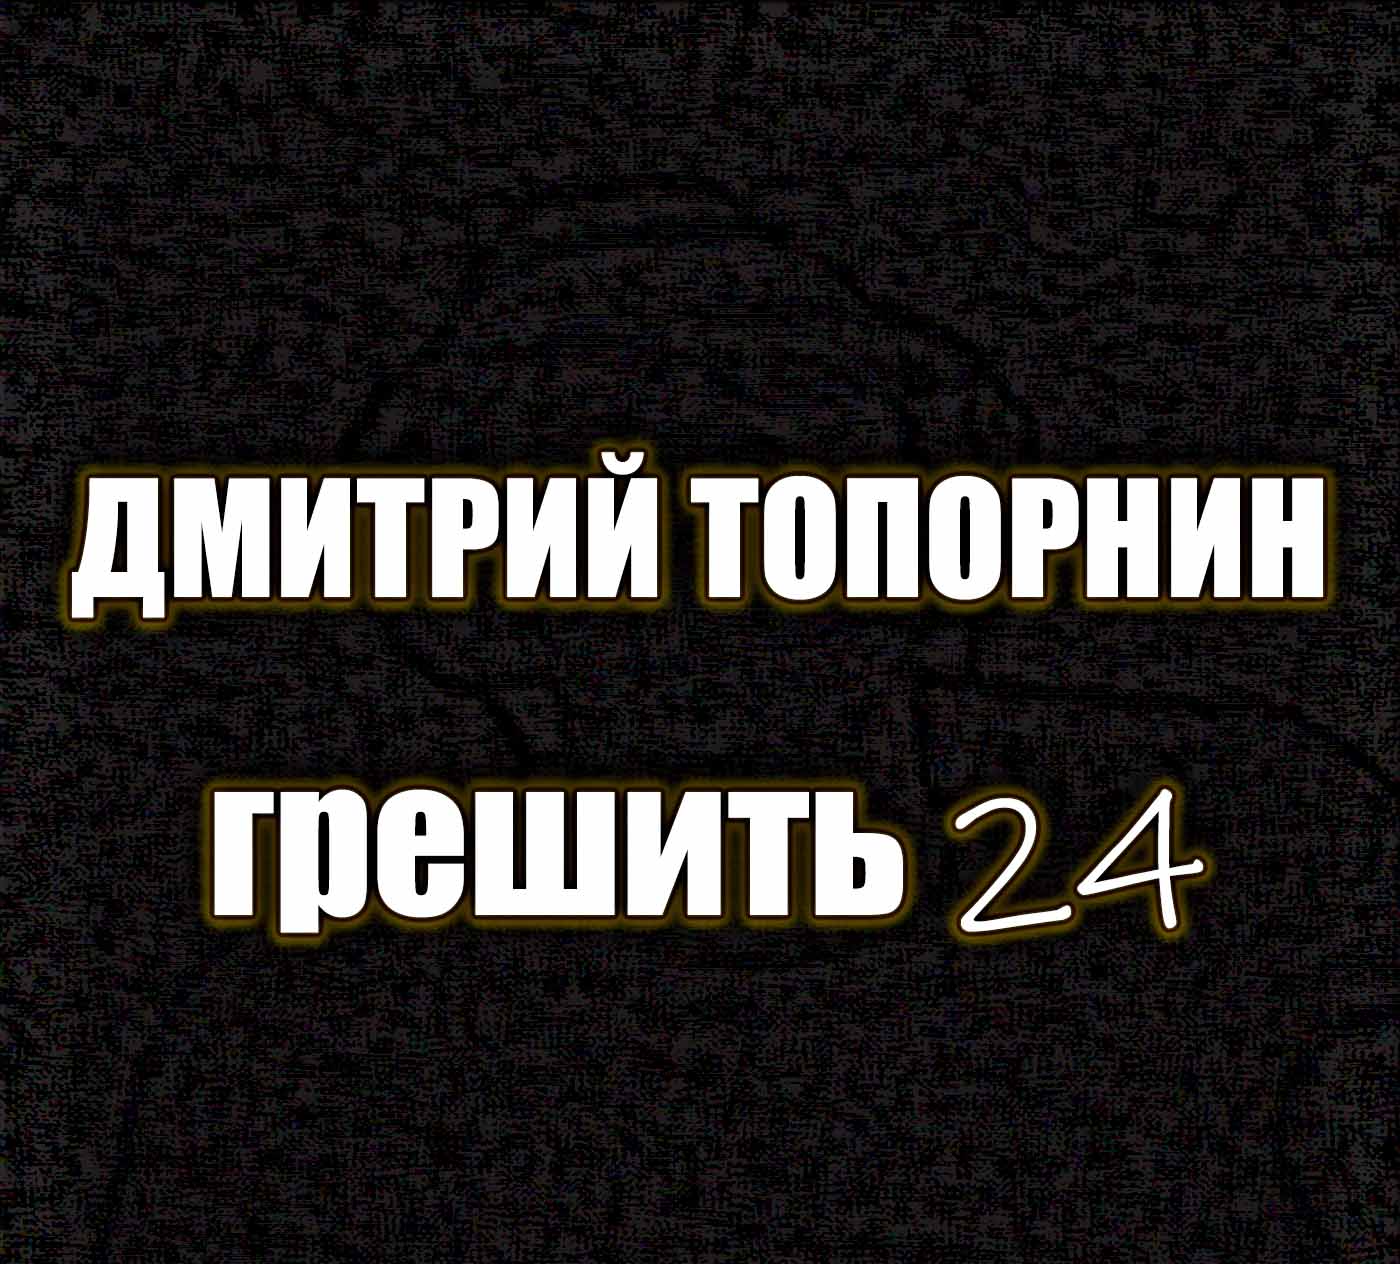 Грешить 24. Дмитрий Топорнин